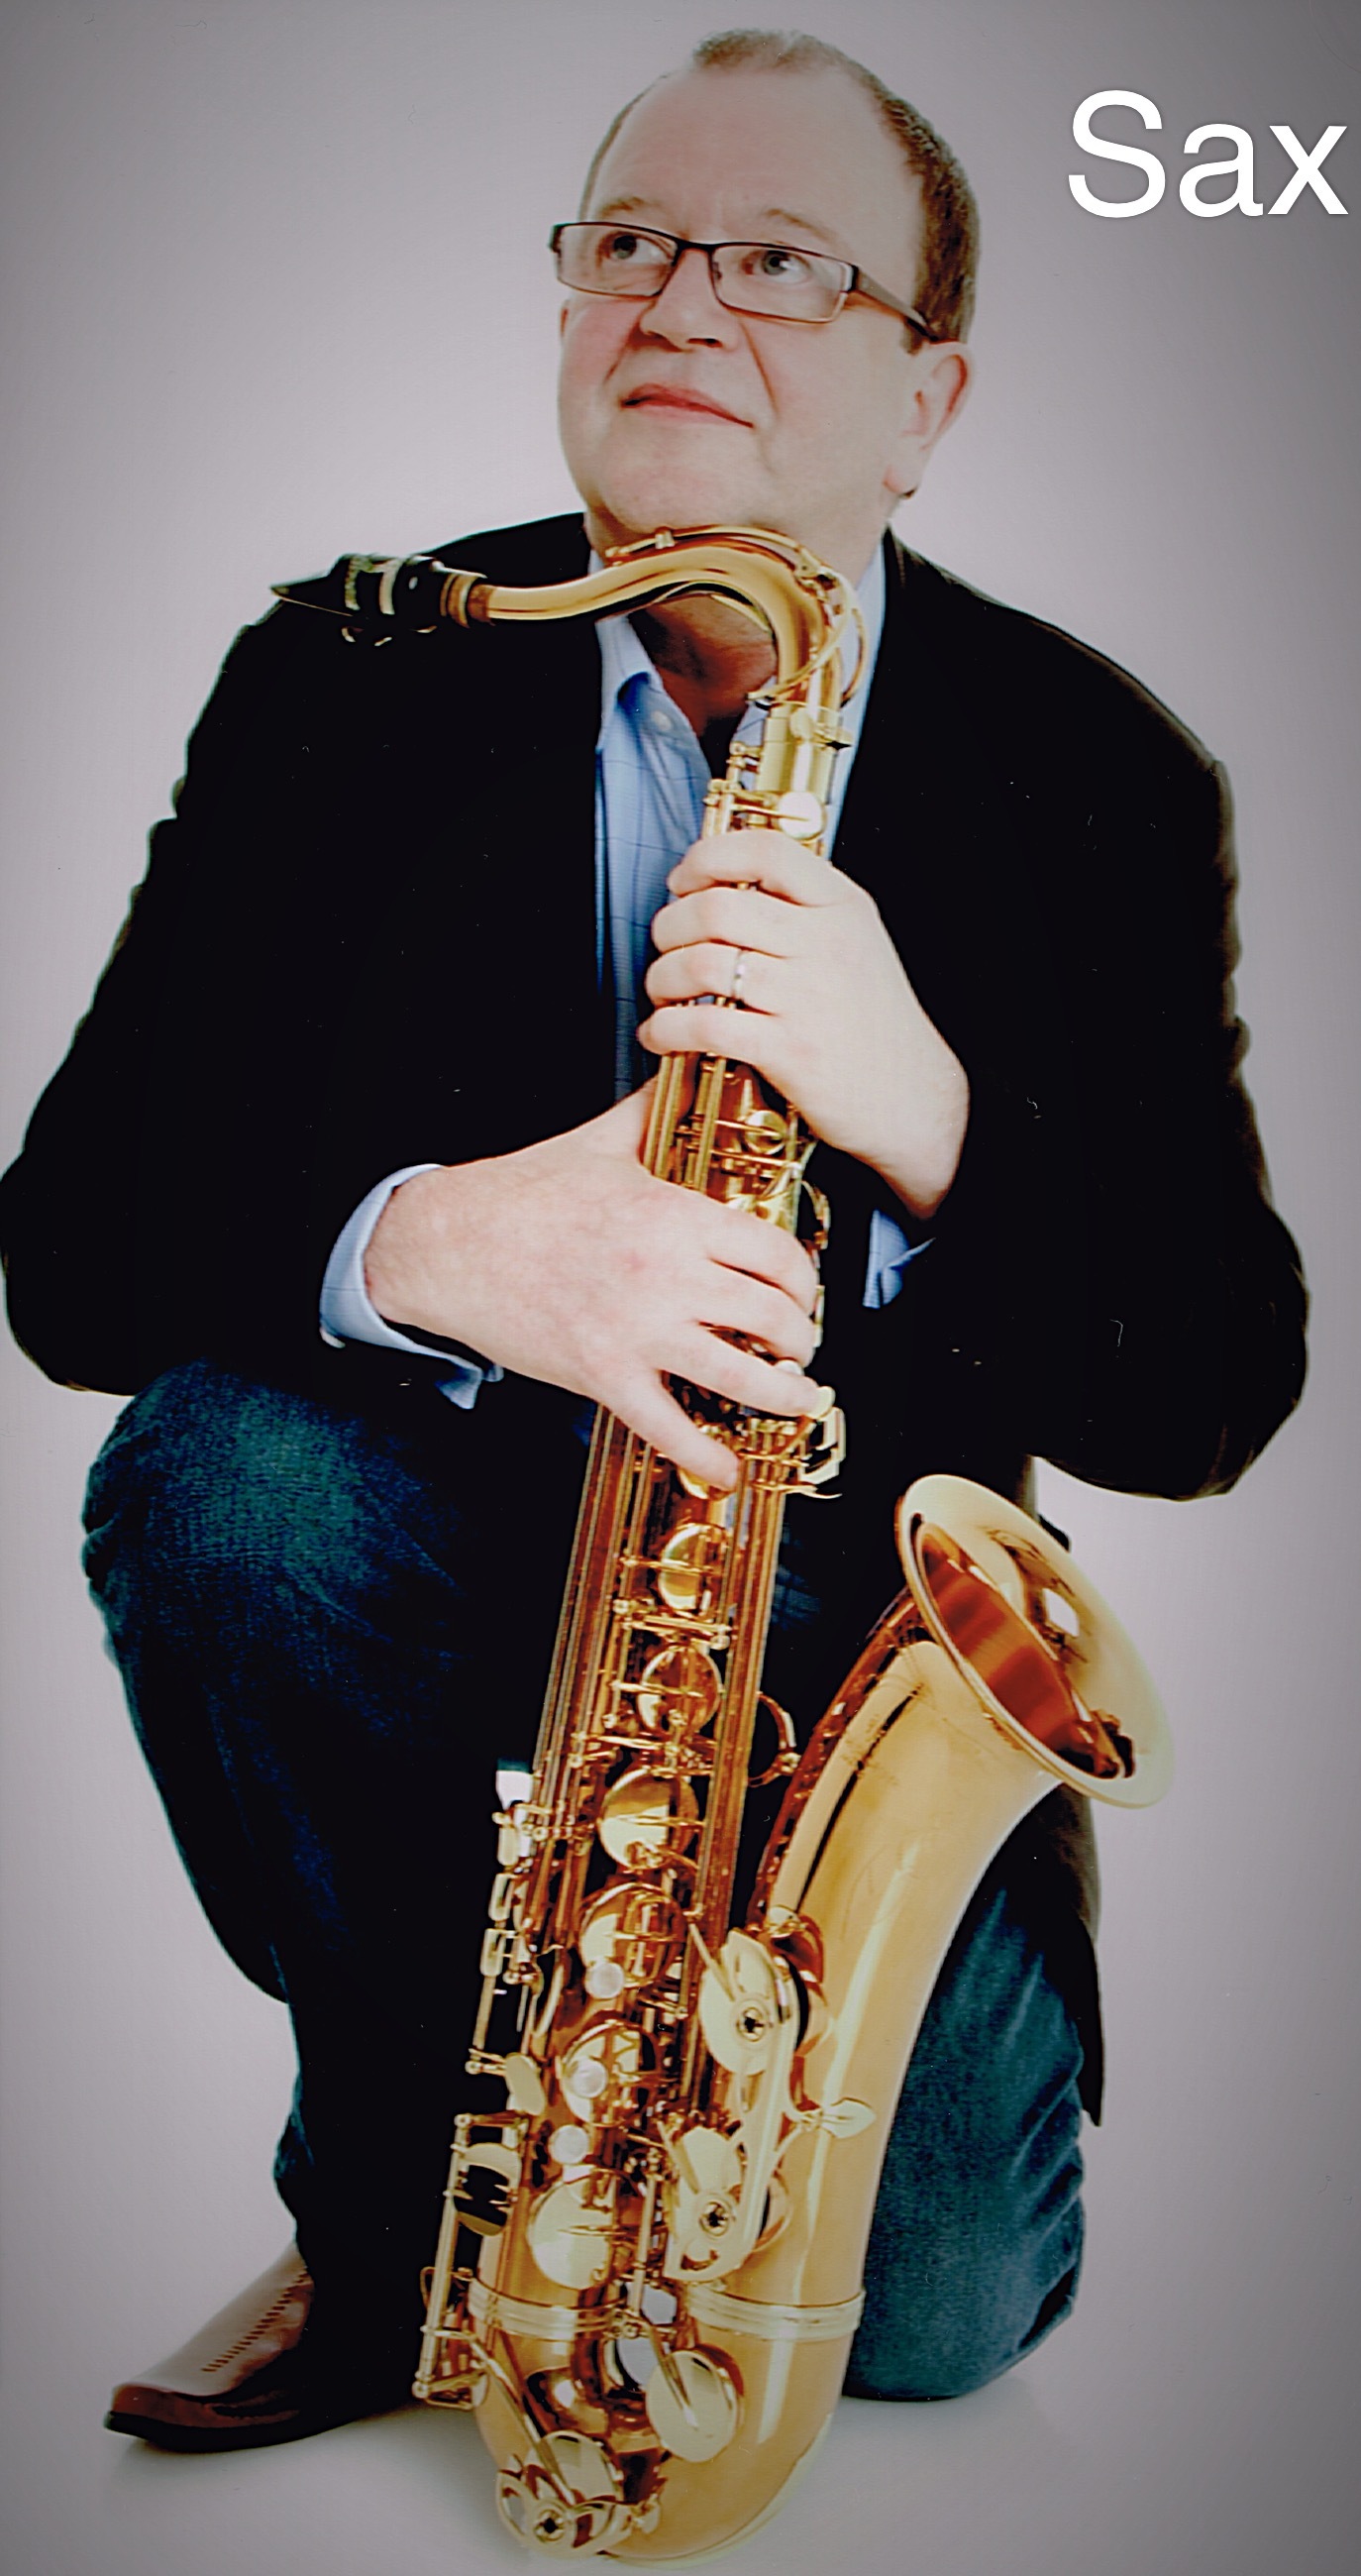 Saxophonist Ken